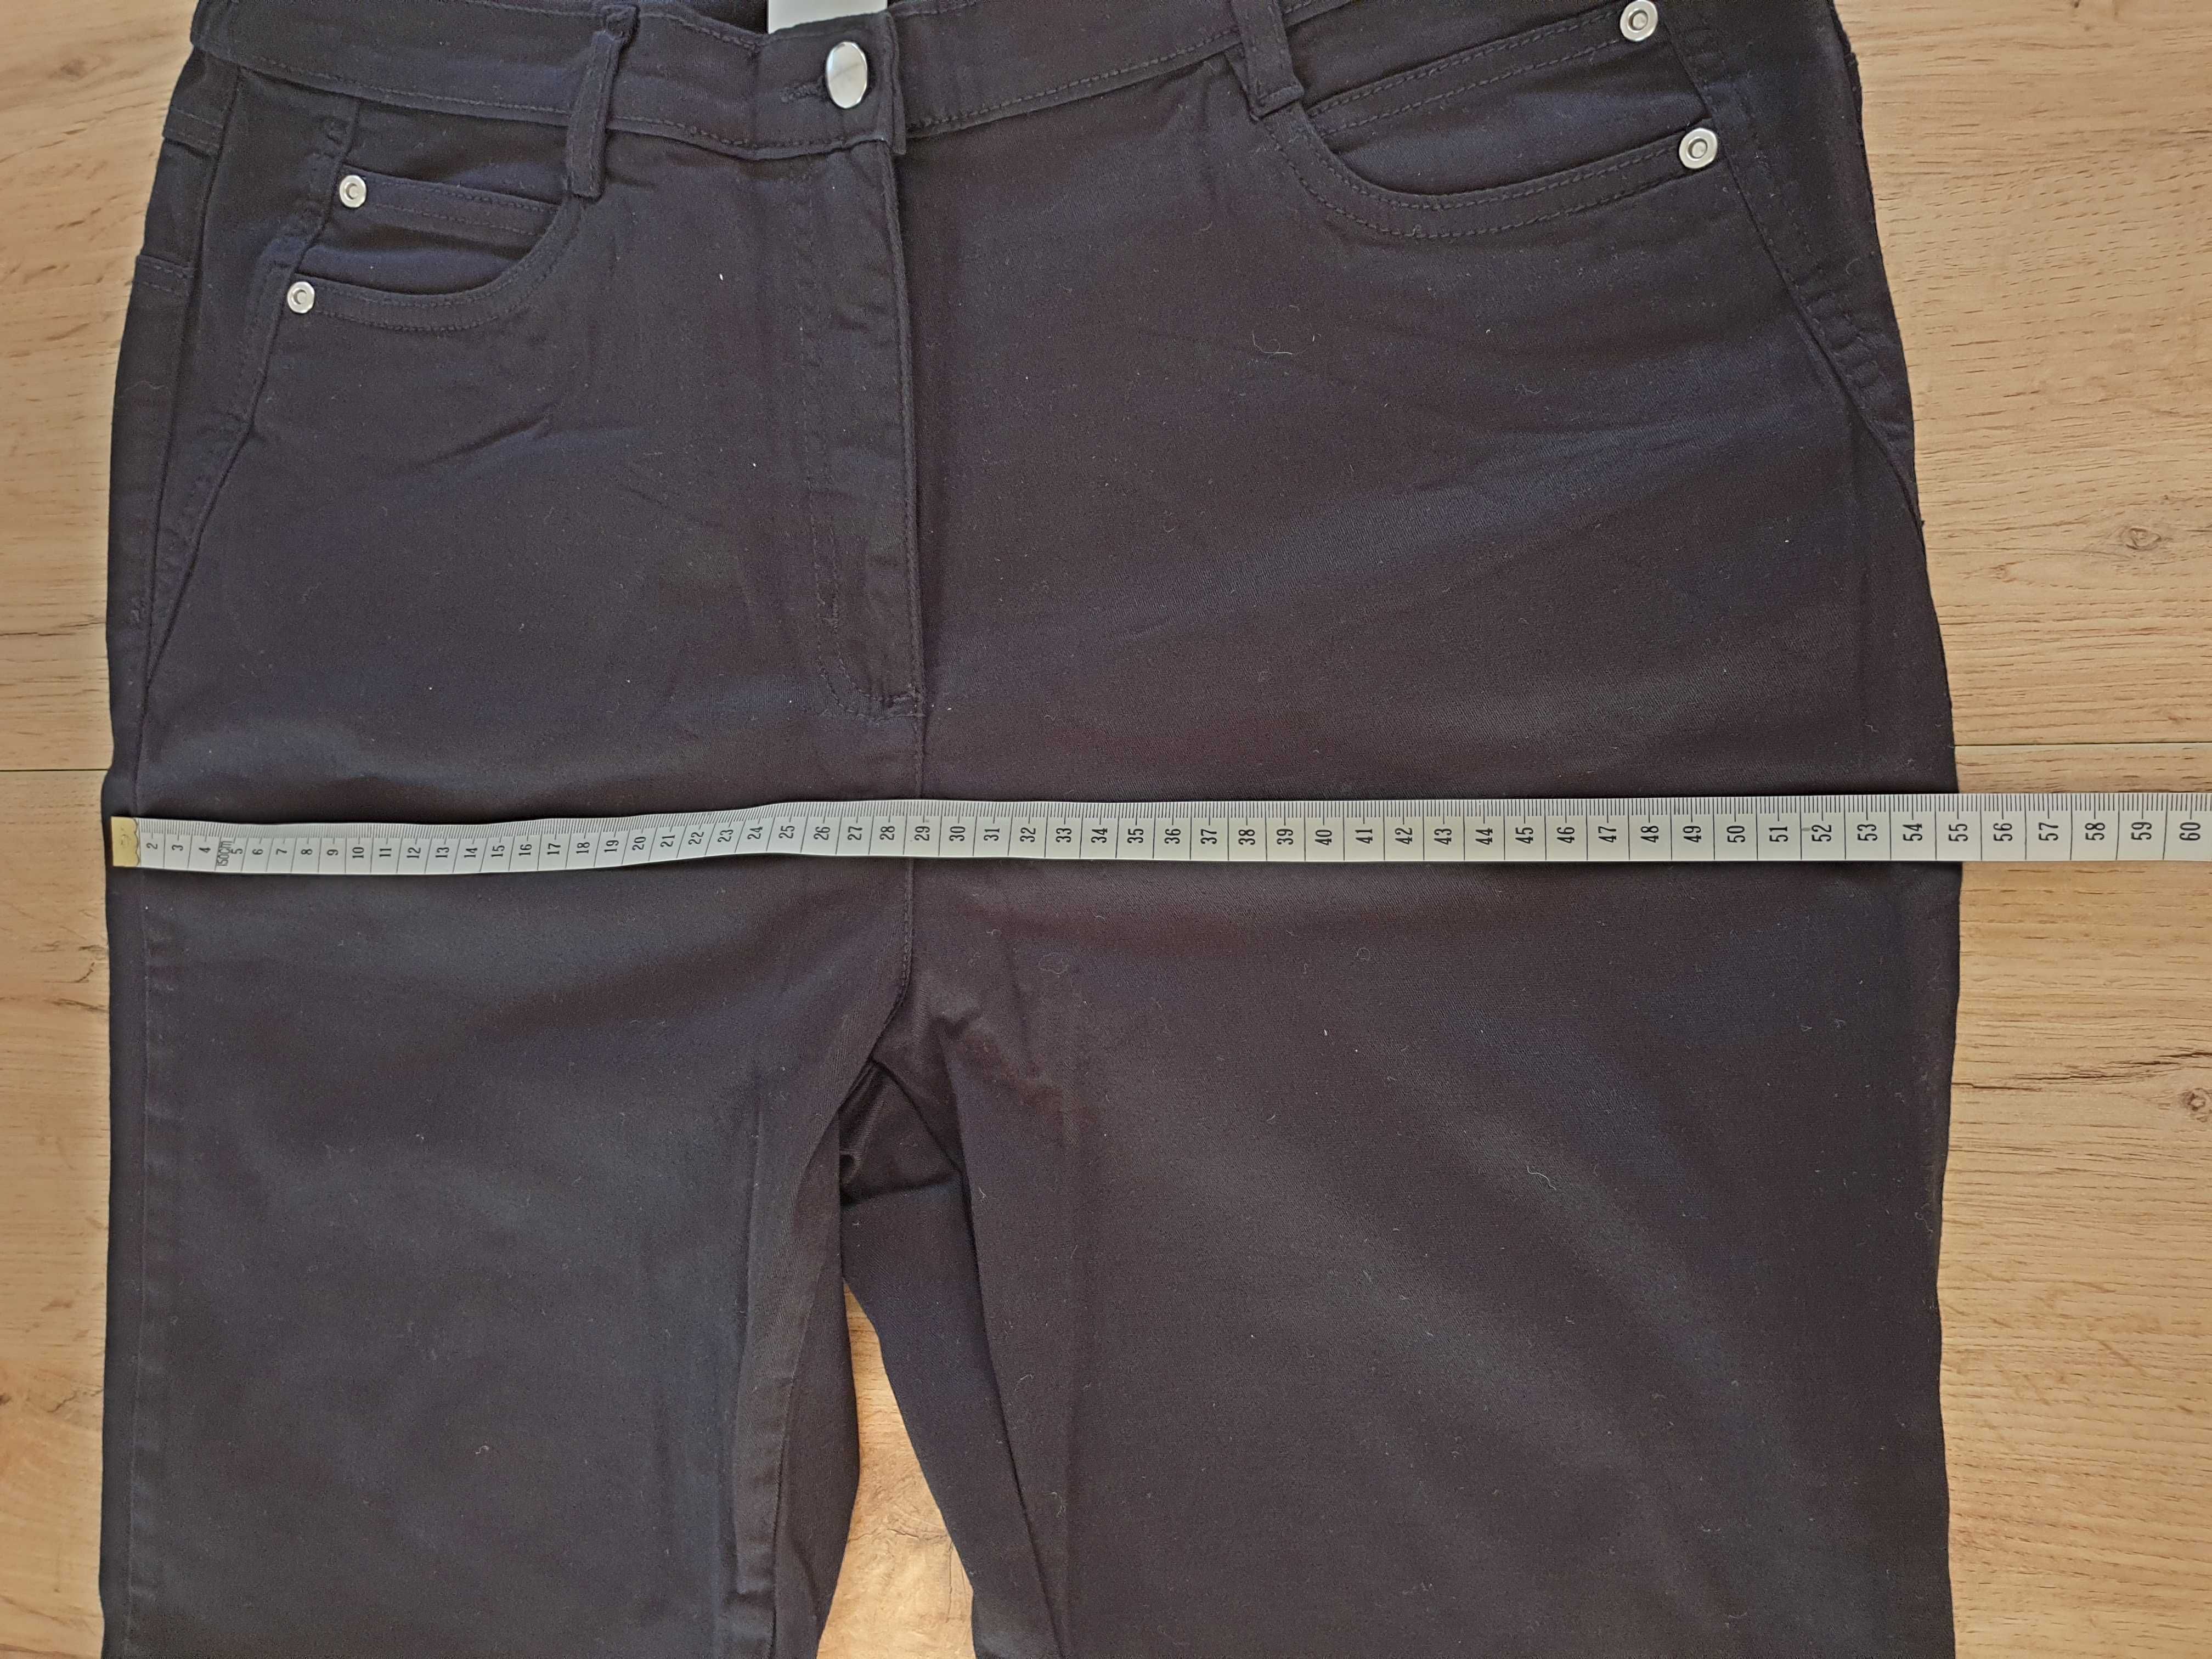 Spodnie jeansowe, czarne jeansy, 97% bawełna, rozmiar XXXL, 46